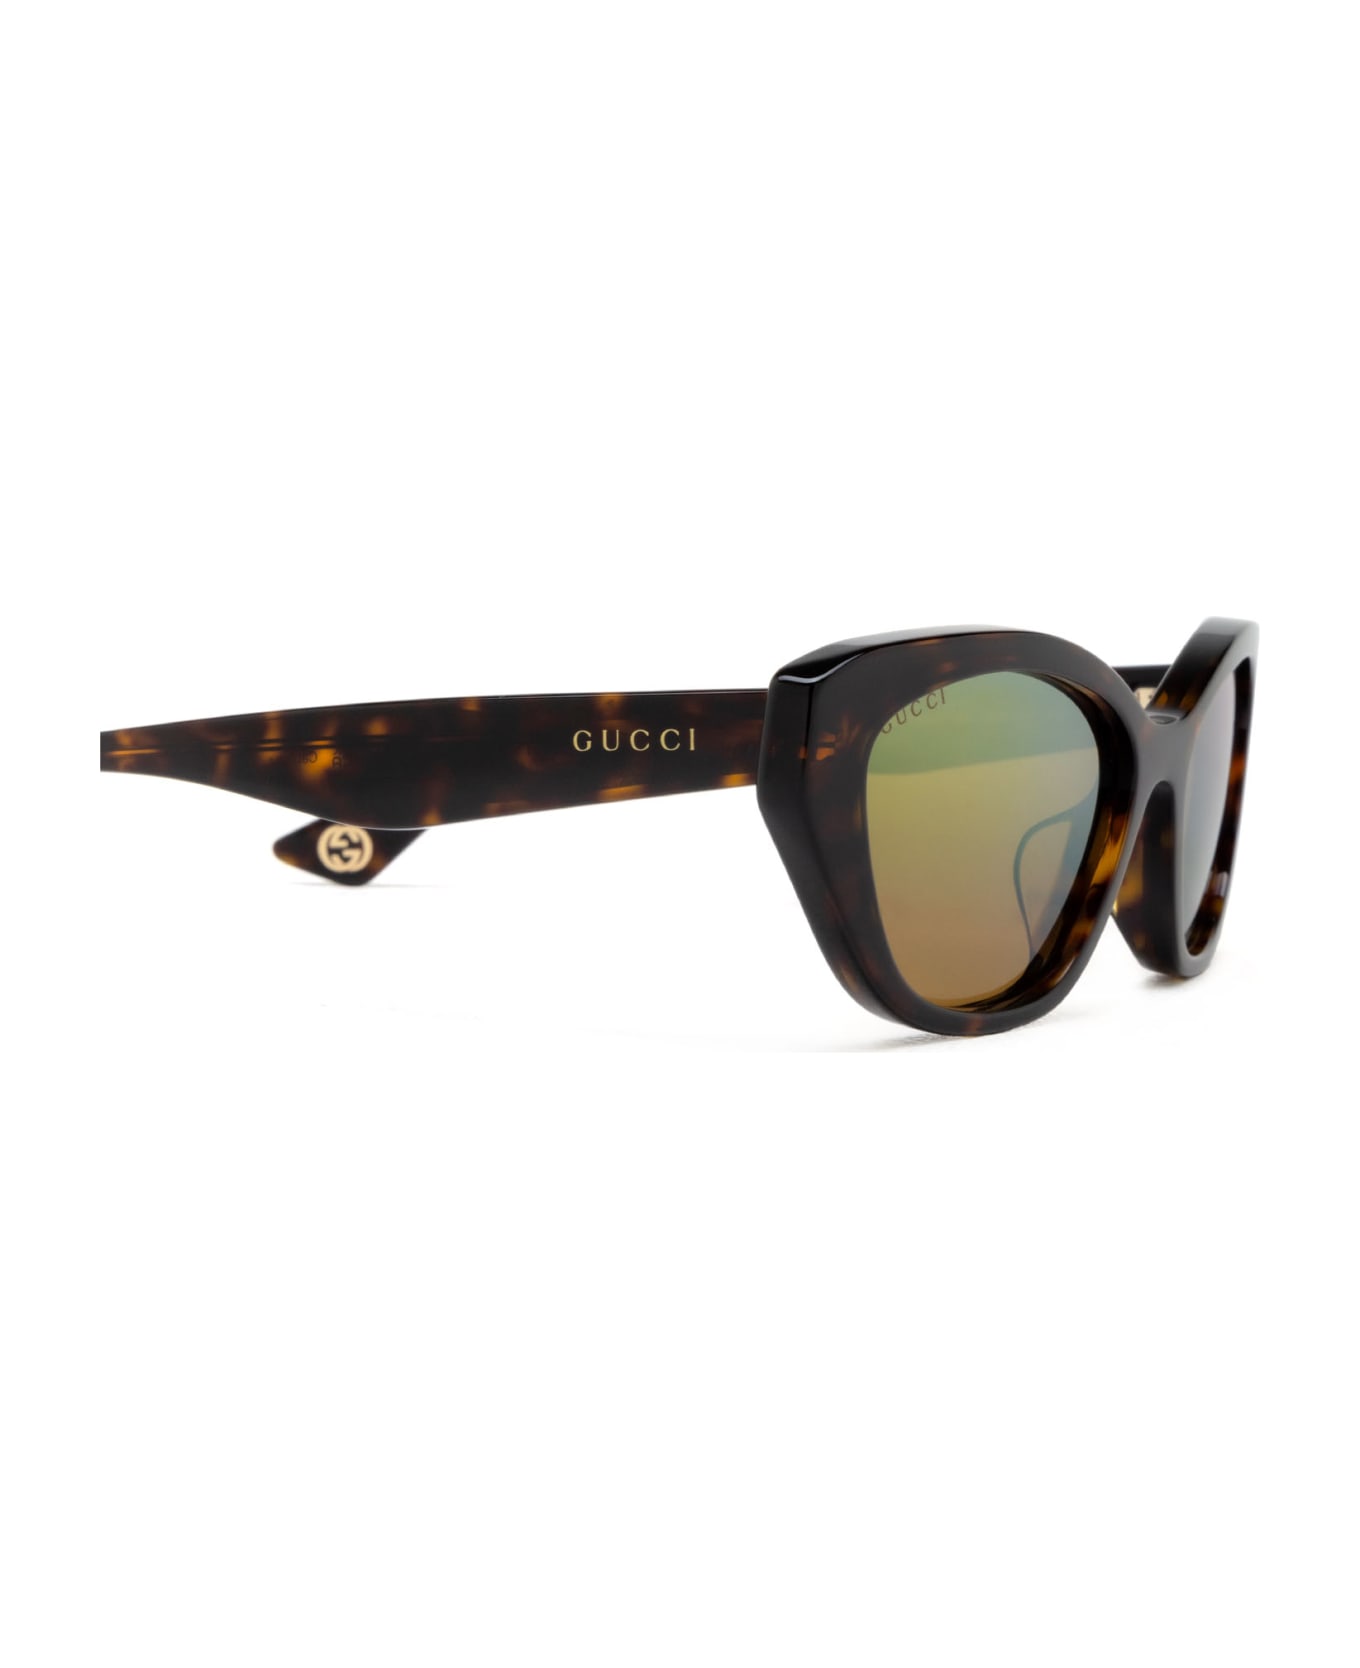 Gucci Eyewear Gg1638sa Havana Sunglasses - Havana